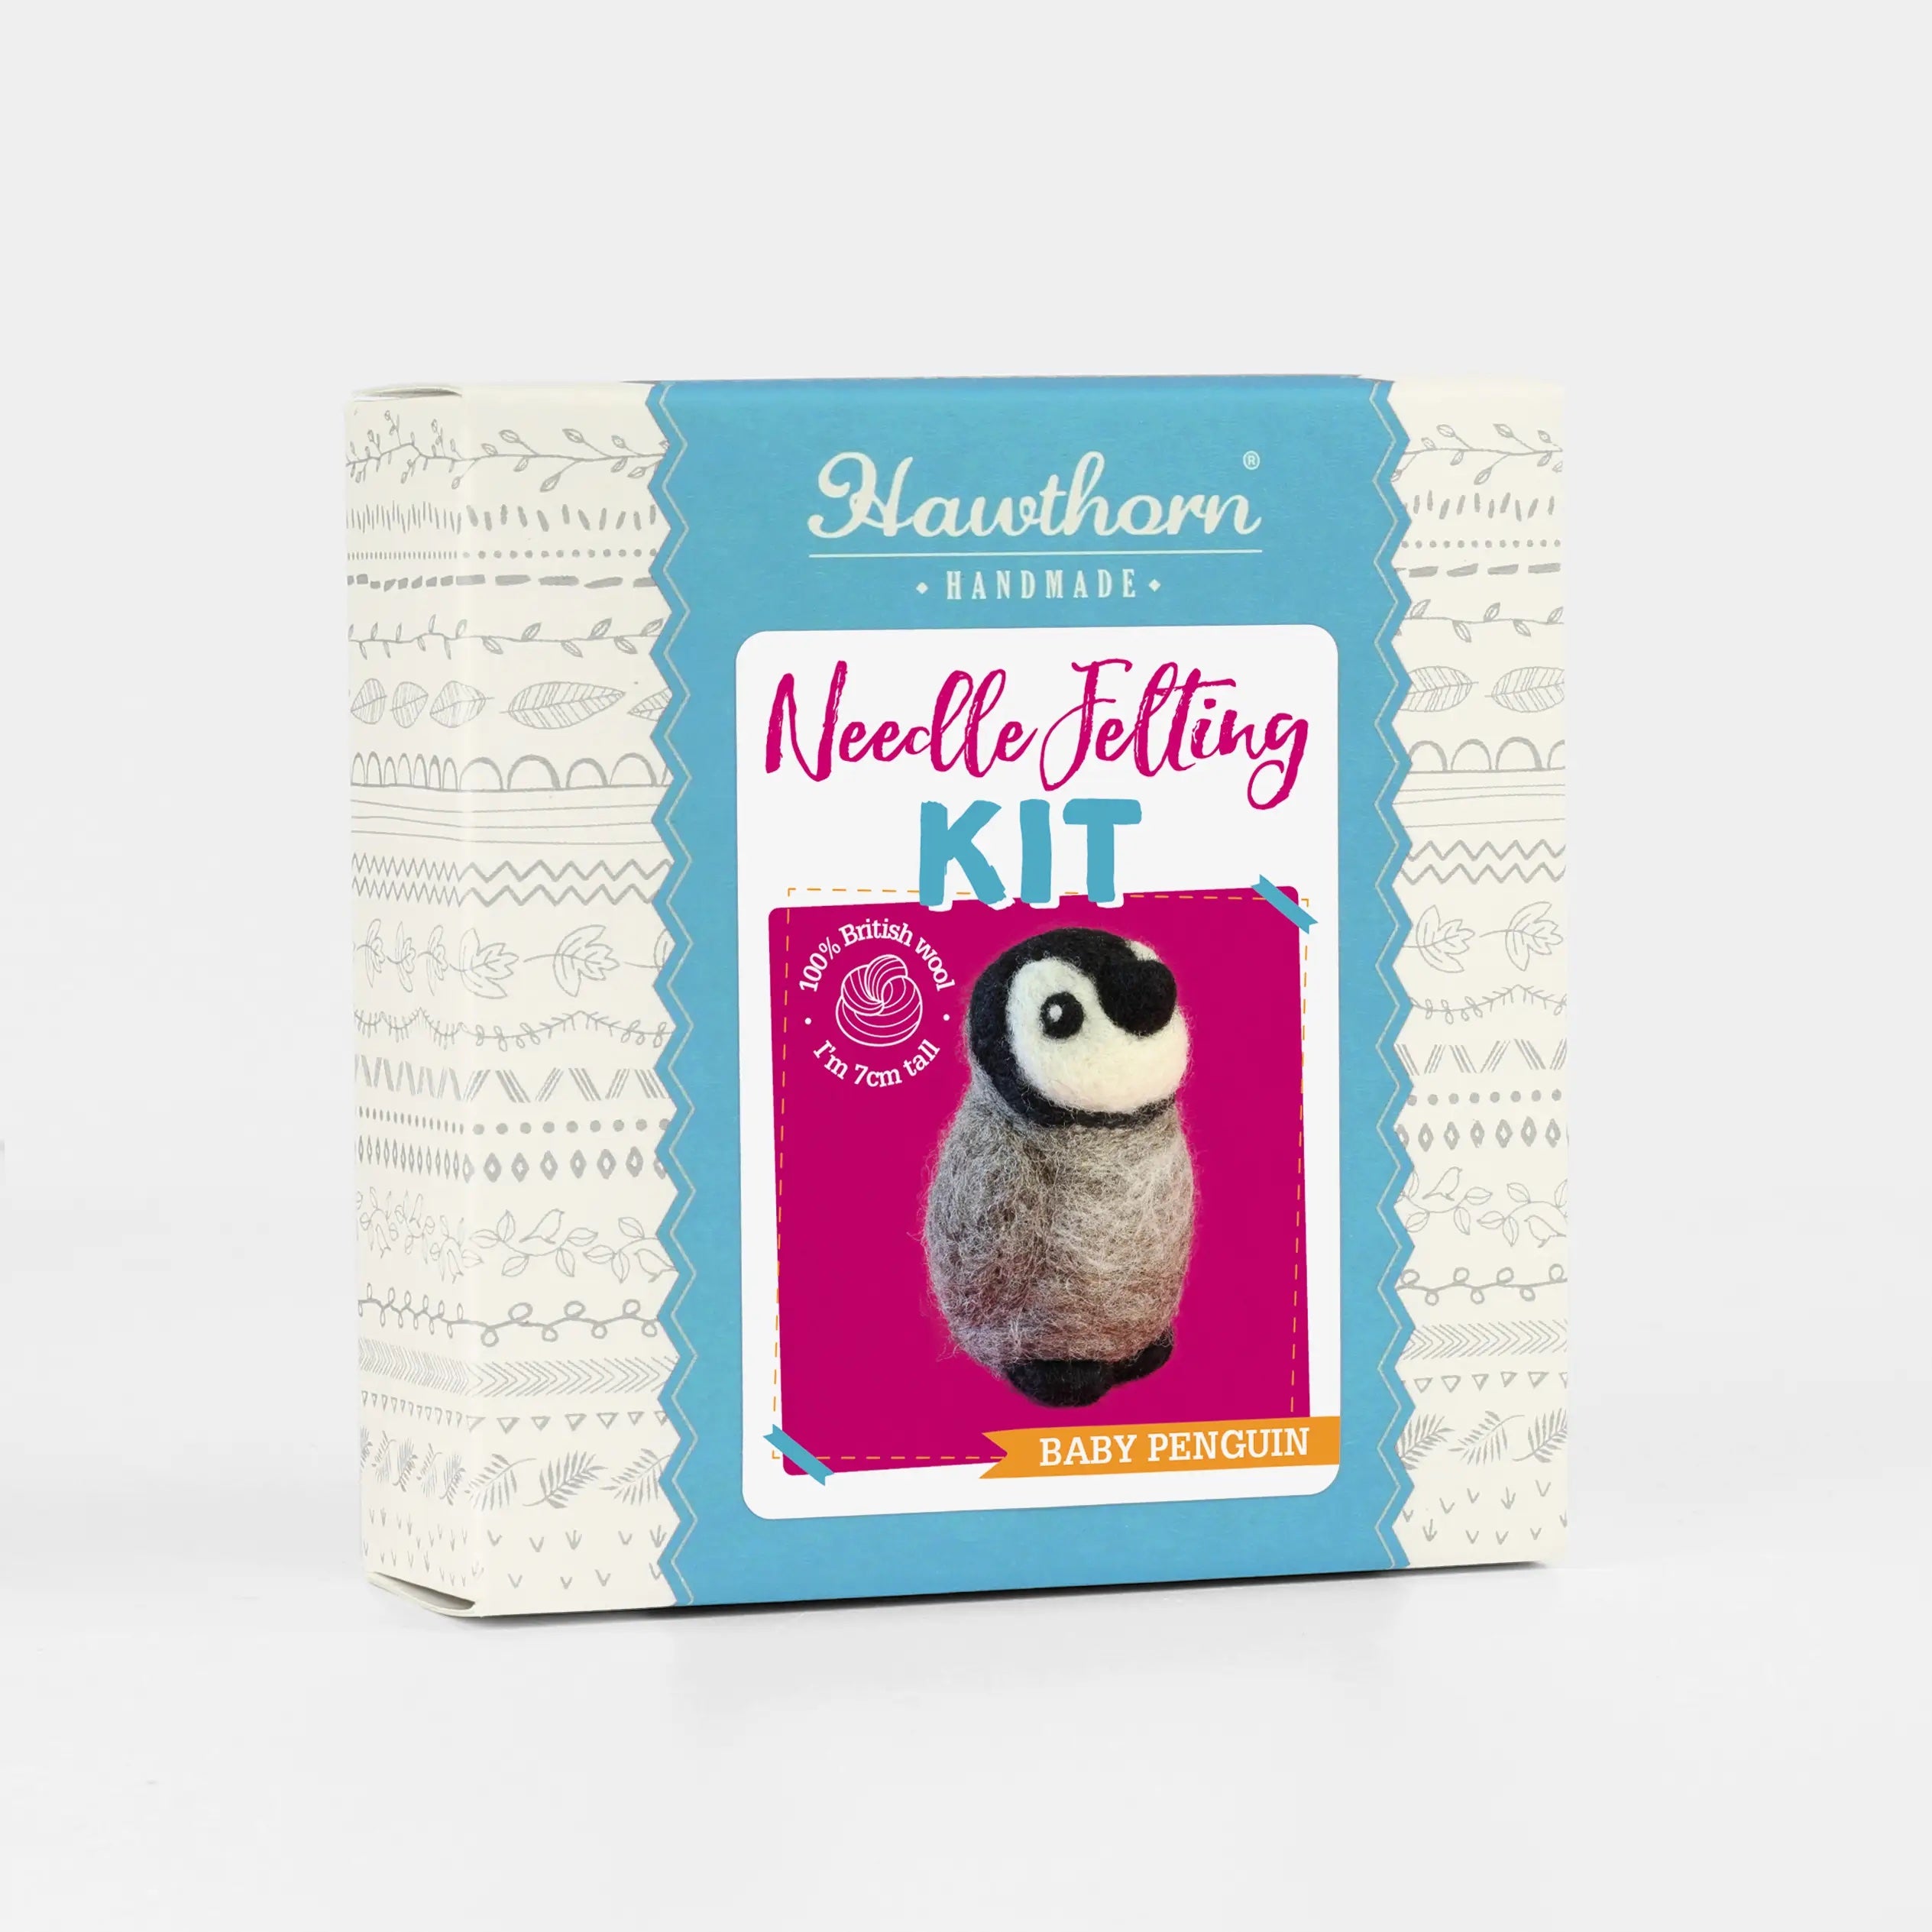 Box for the Penguin mini needle felting kit